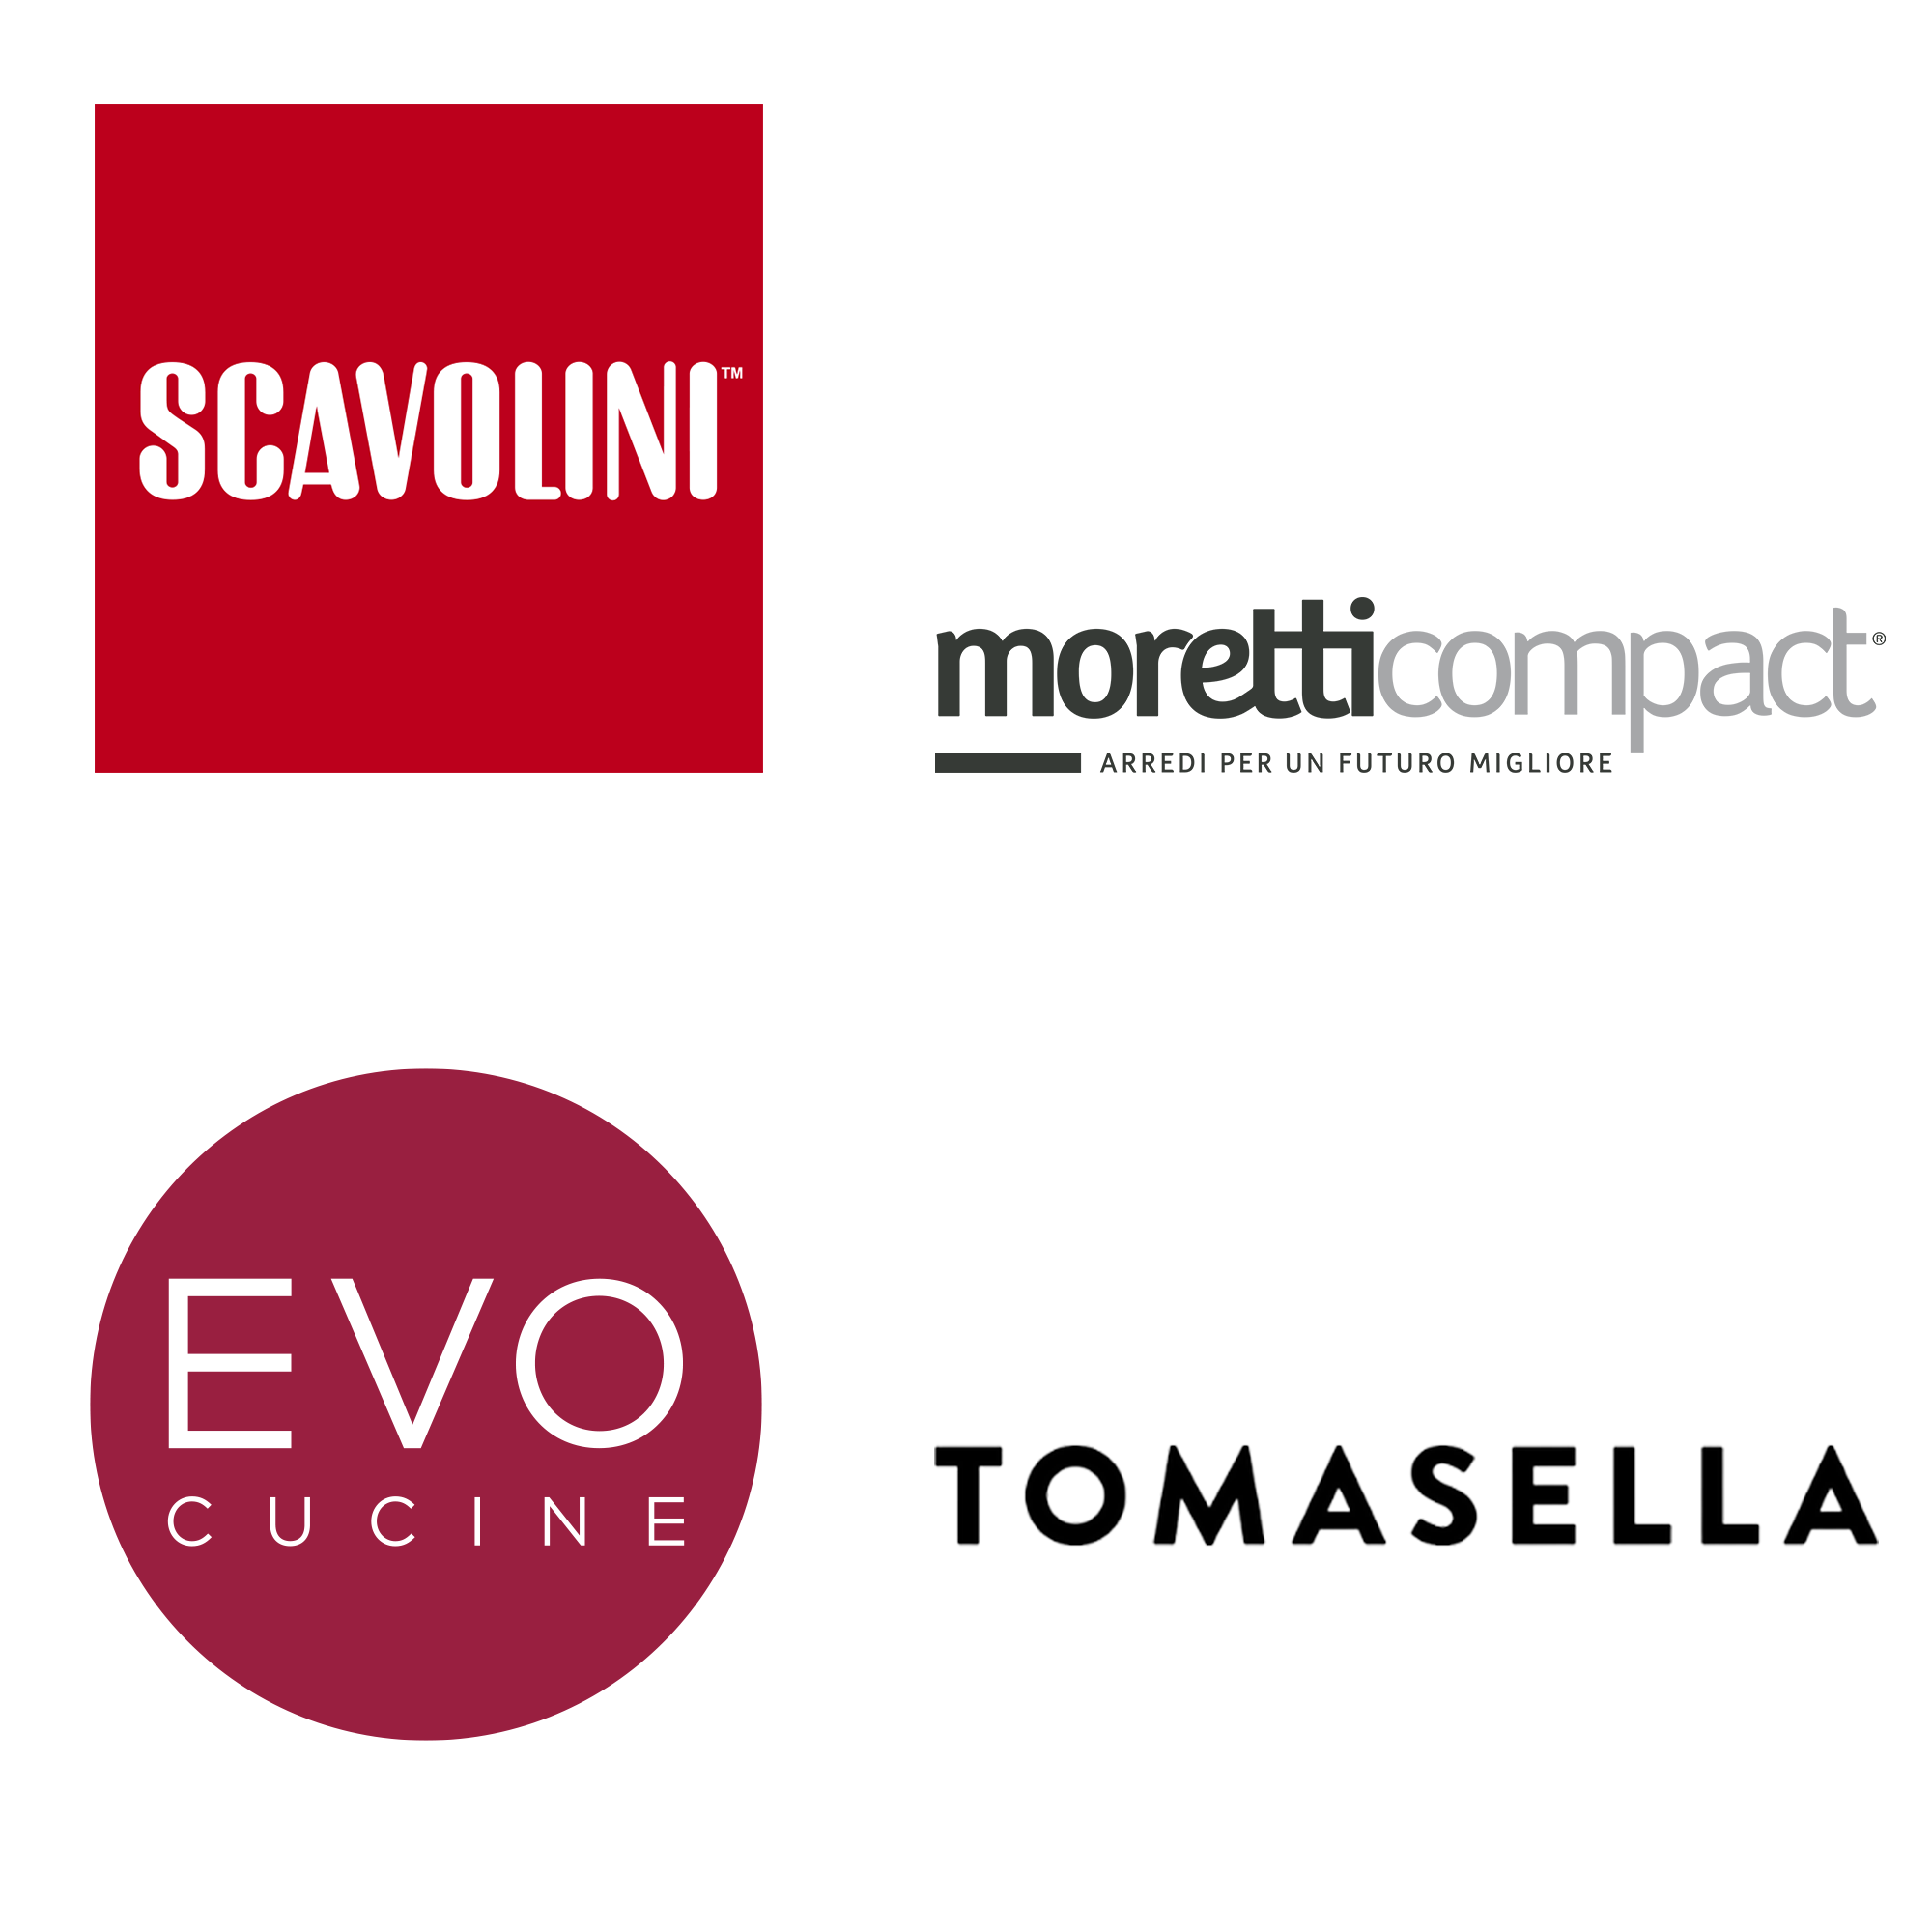 Scavolini, Moretti Compact. Evo Cucine, Tomasella Marinelli Design Group arredamento Roma